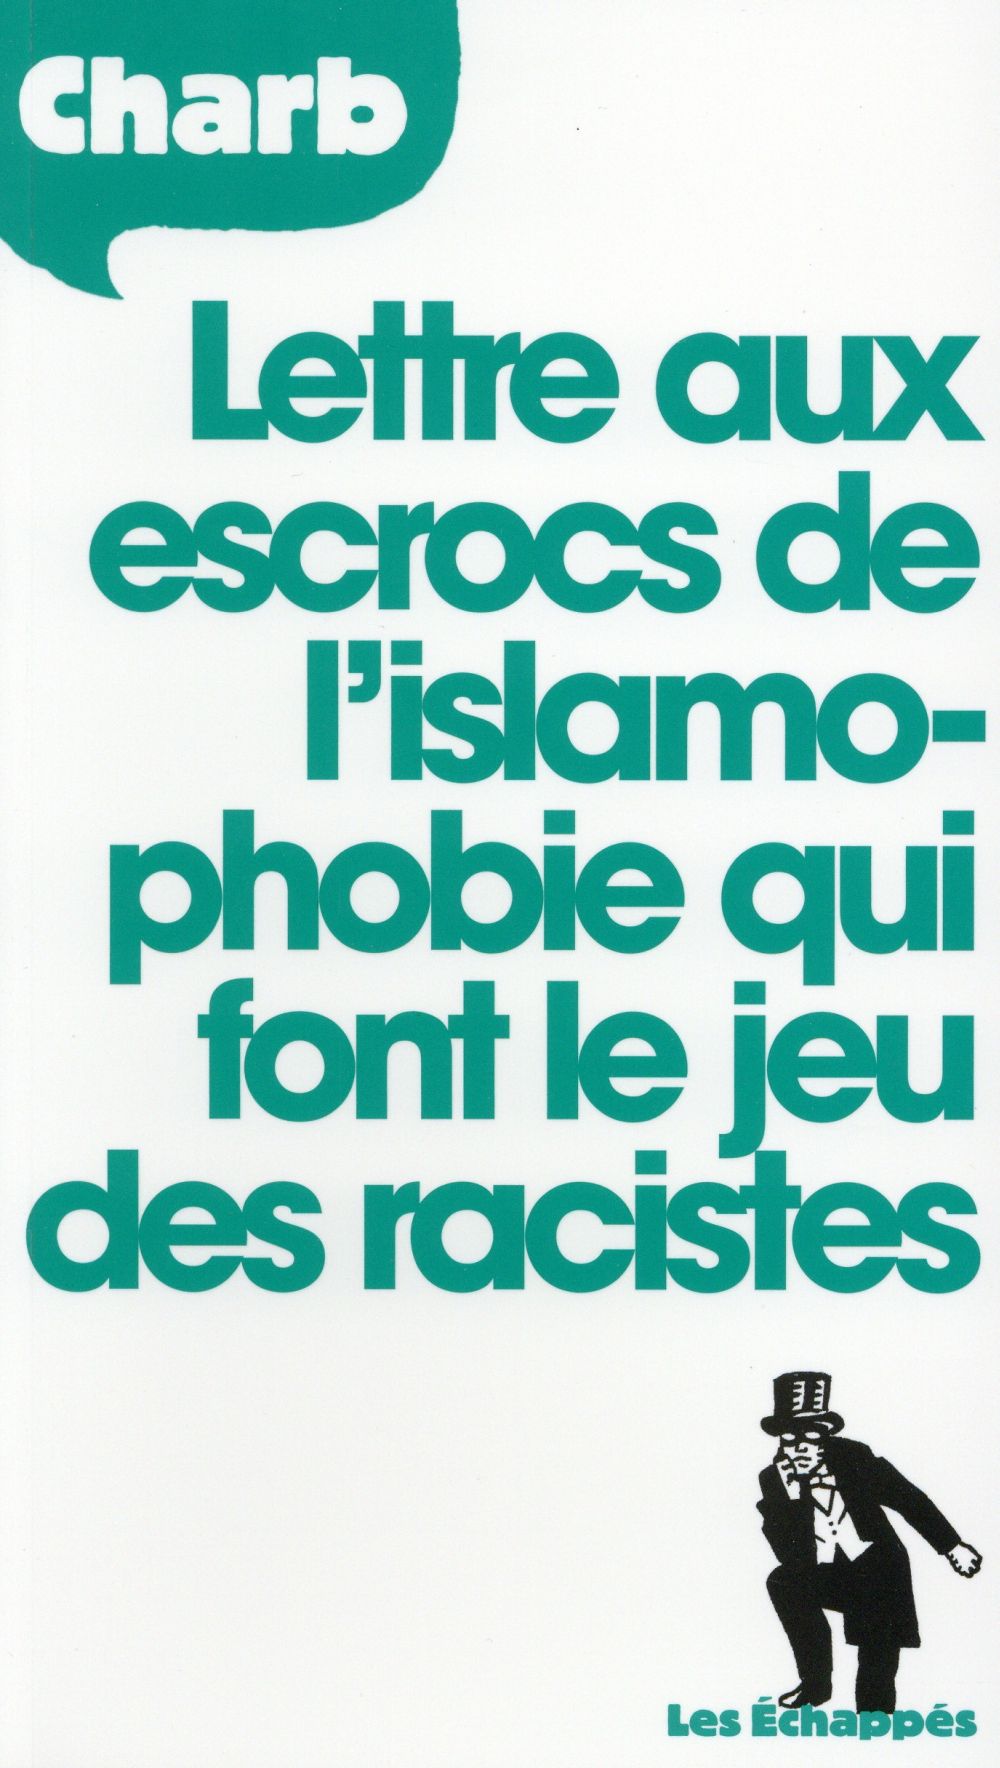 LETTRE AUX ESCROCS DE L'ISLAMOPHOBIE QUI FONT LE JEU DES RACISTES